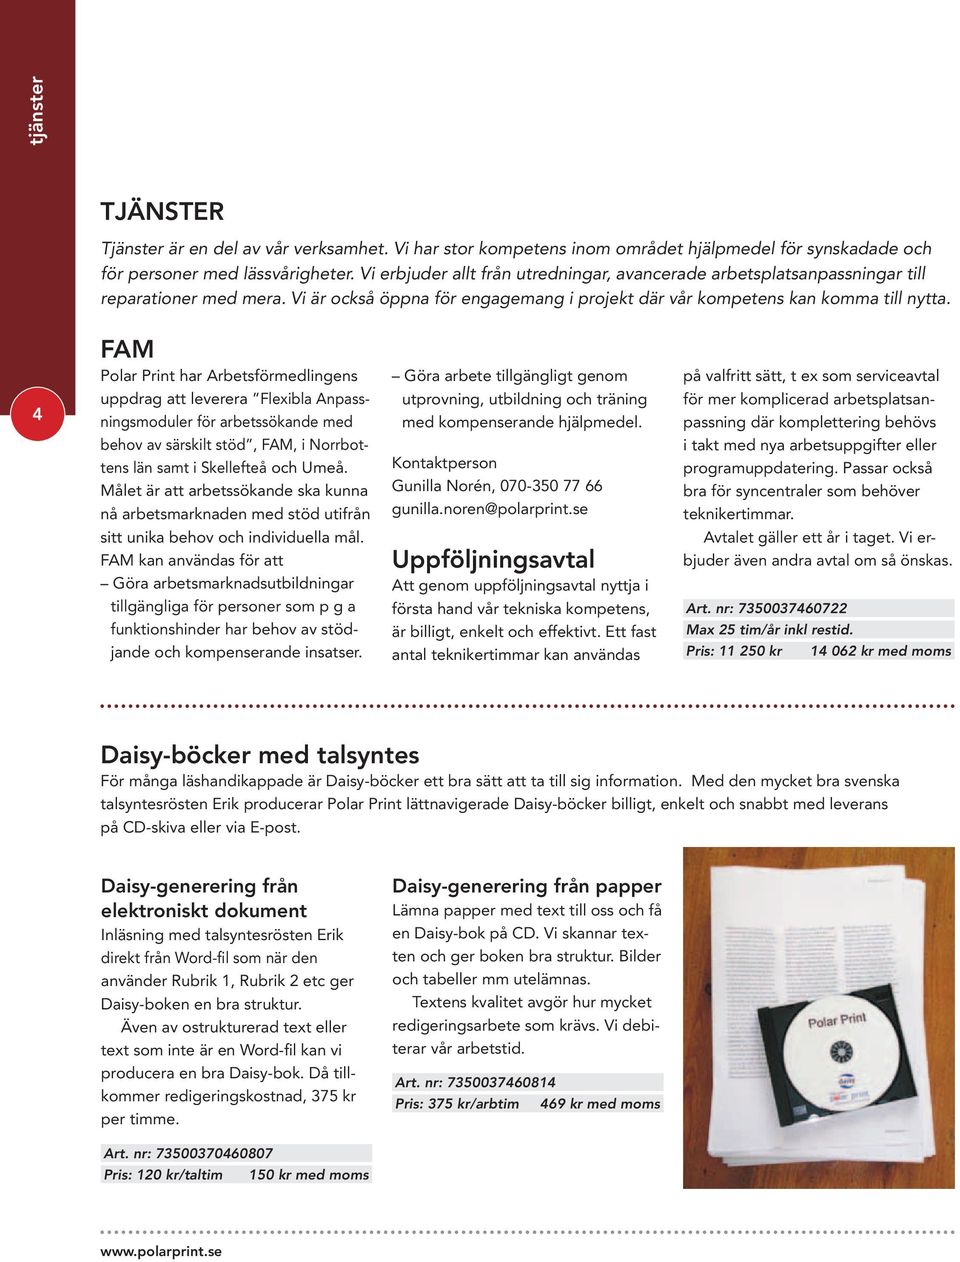 4 FAM Polar Print har Arbetsförmedlingens uppdrag att leverera Flexibla Anpassningsmoduler för arbetssökande med behov av särskilt stöd, FAM, i Norrbottens län samt i Skellefteå och Umeå.